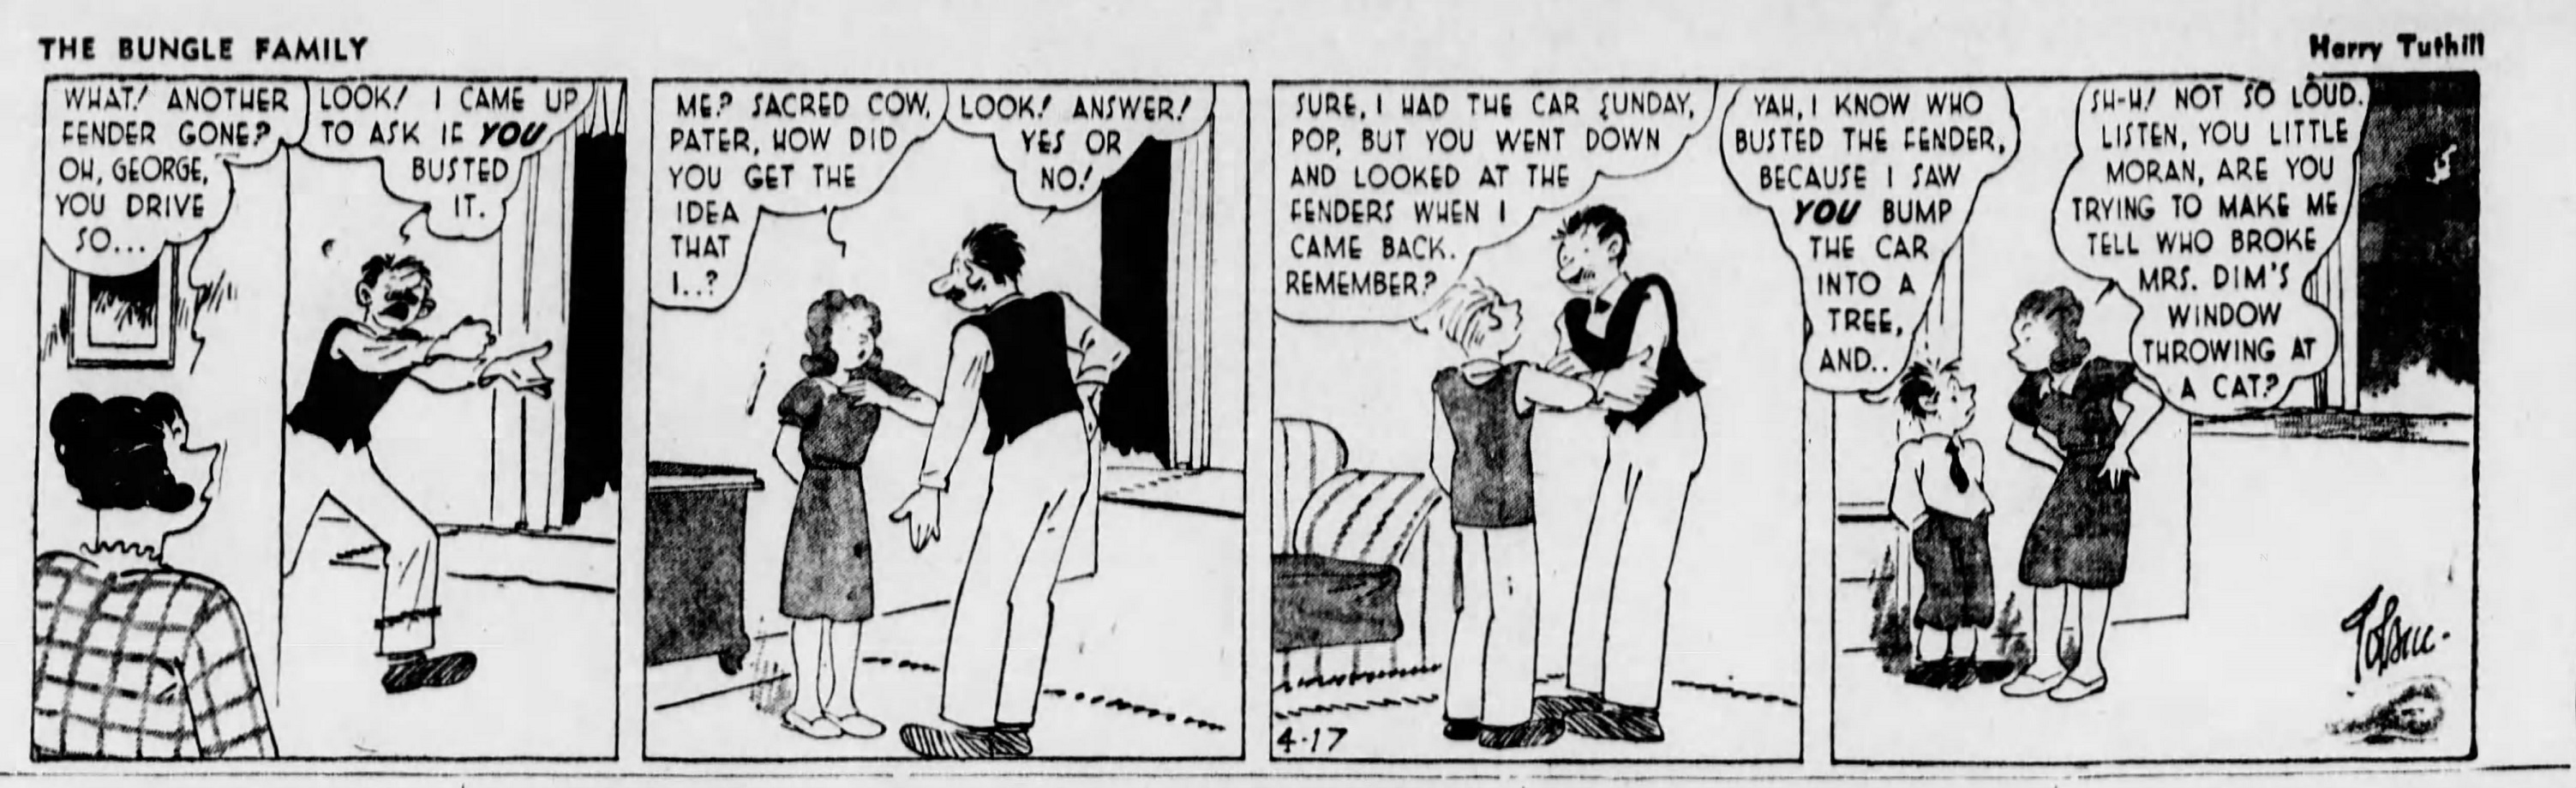 The_Brooklyn_Daily_Eagle_Sat__Apr_17__1943_(9).jpg